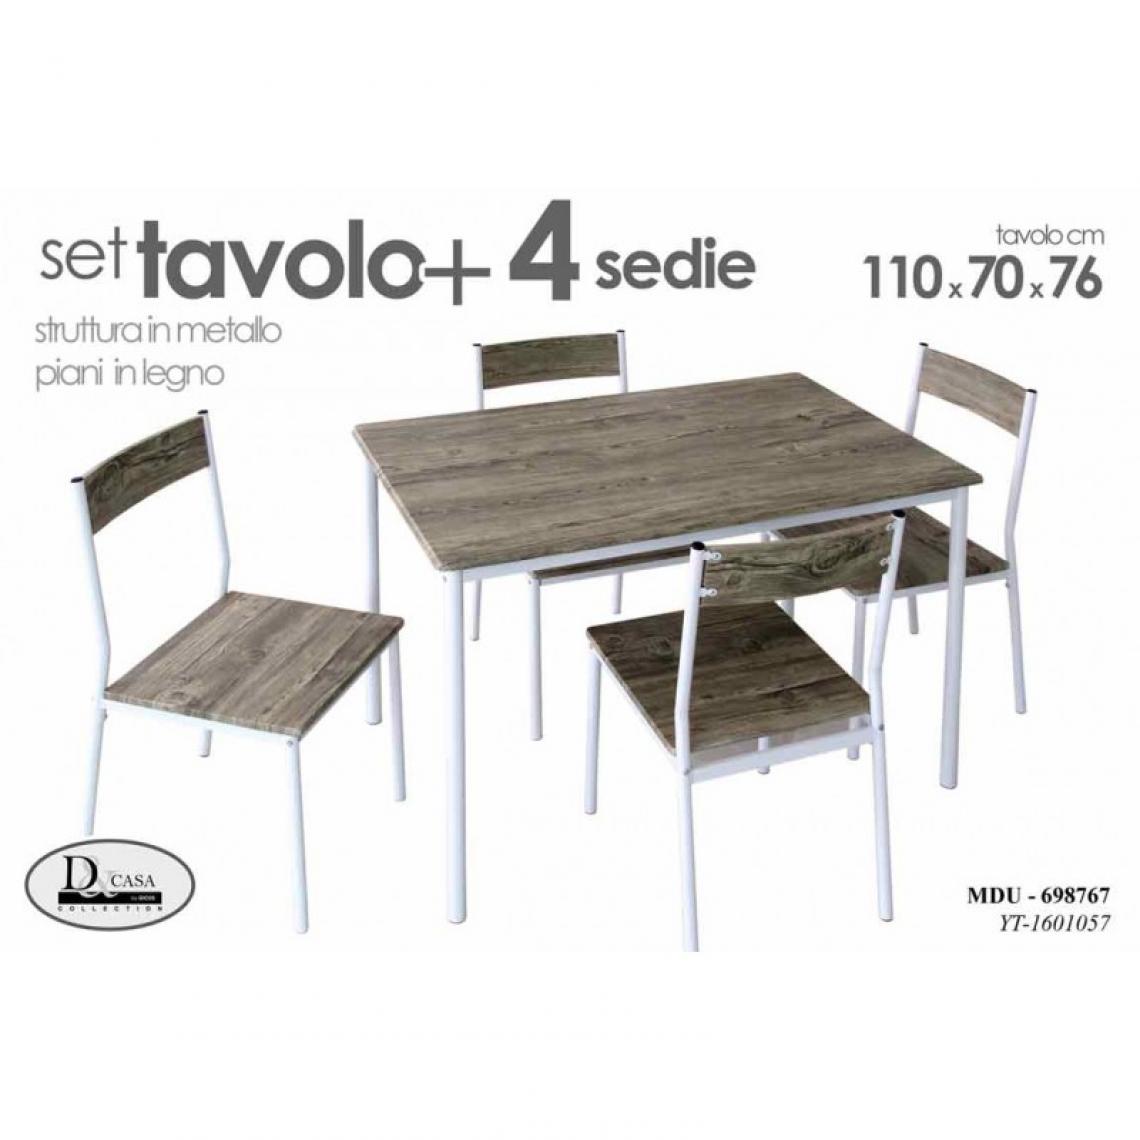 Webmarketpoint - Table avec 4 chaises structure en métal 110x 70x 76 h - Tables à manger